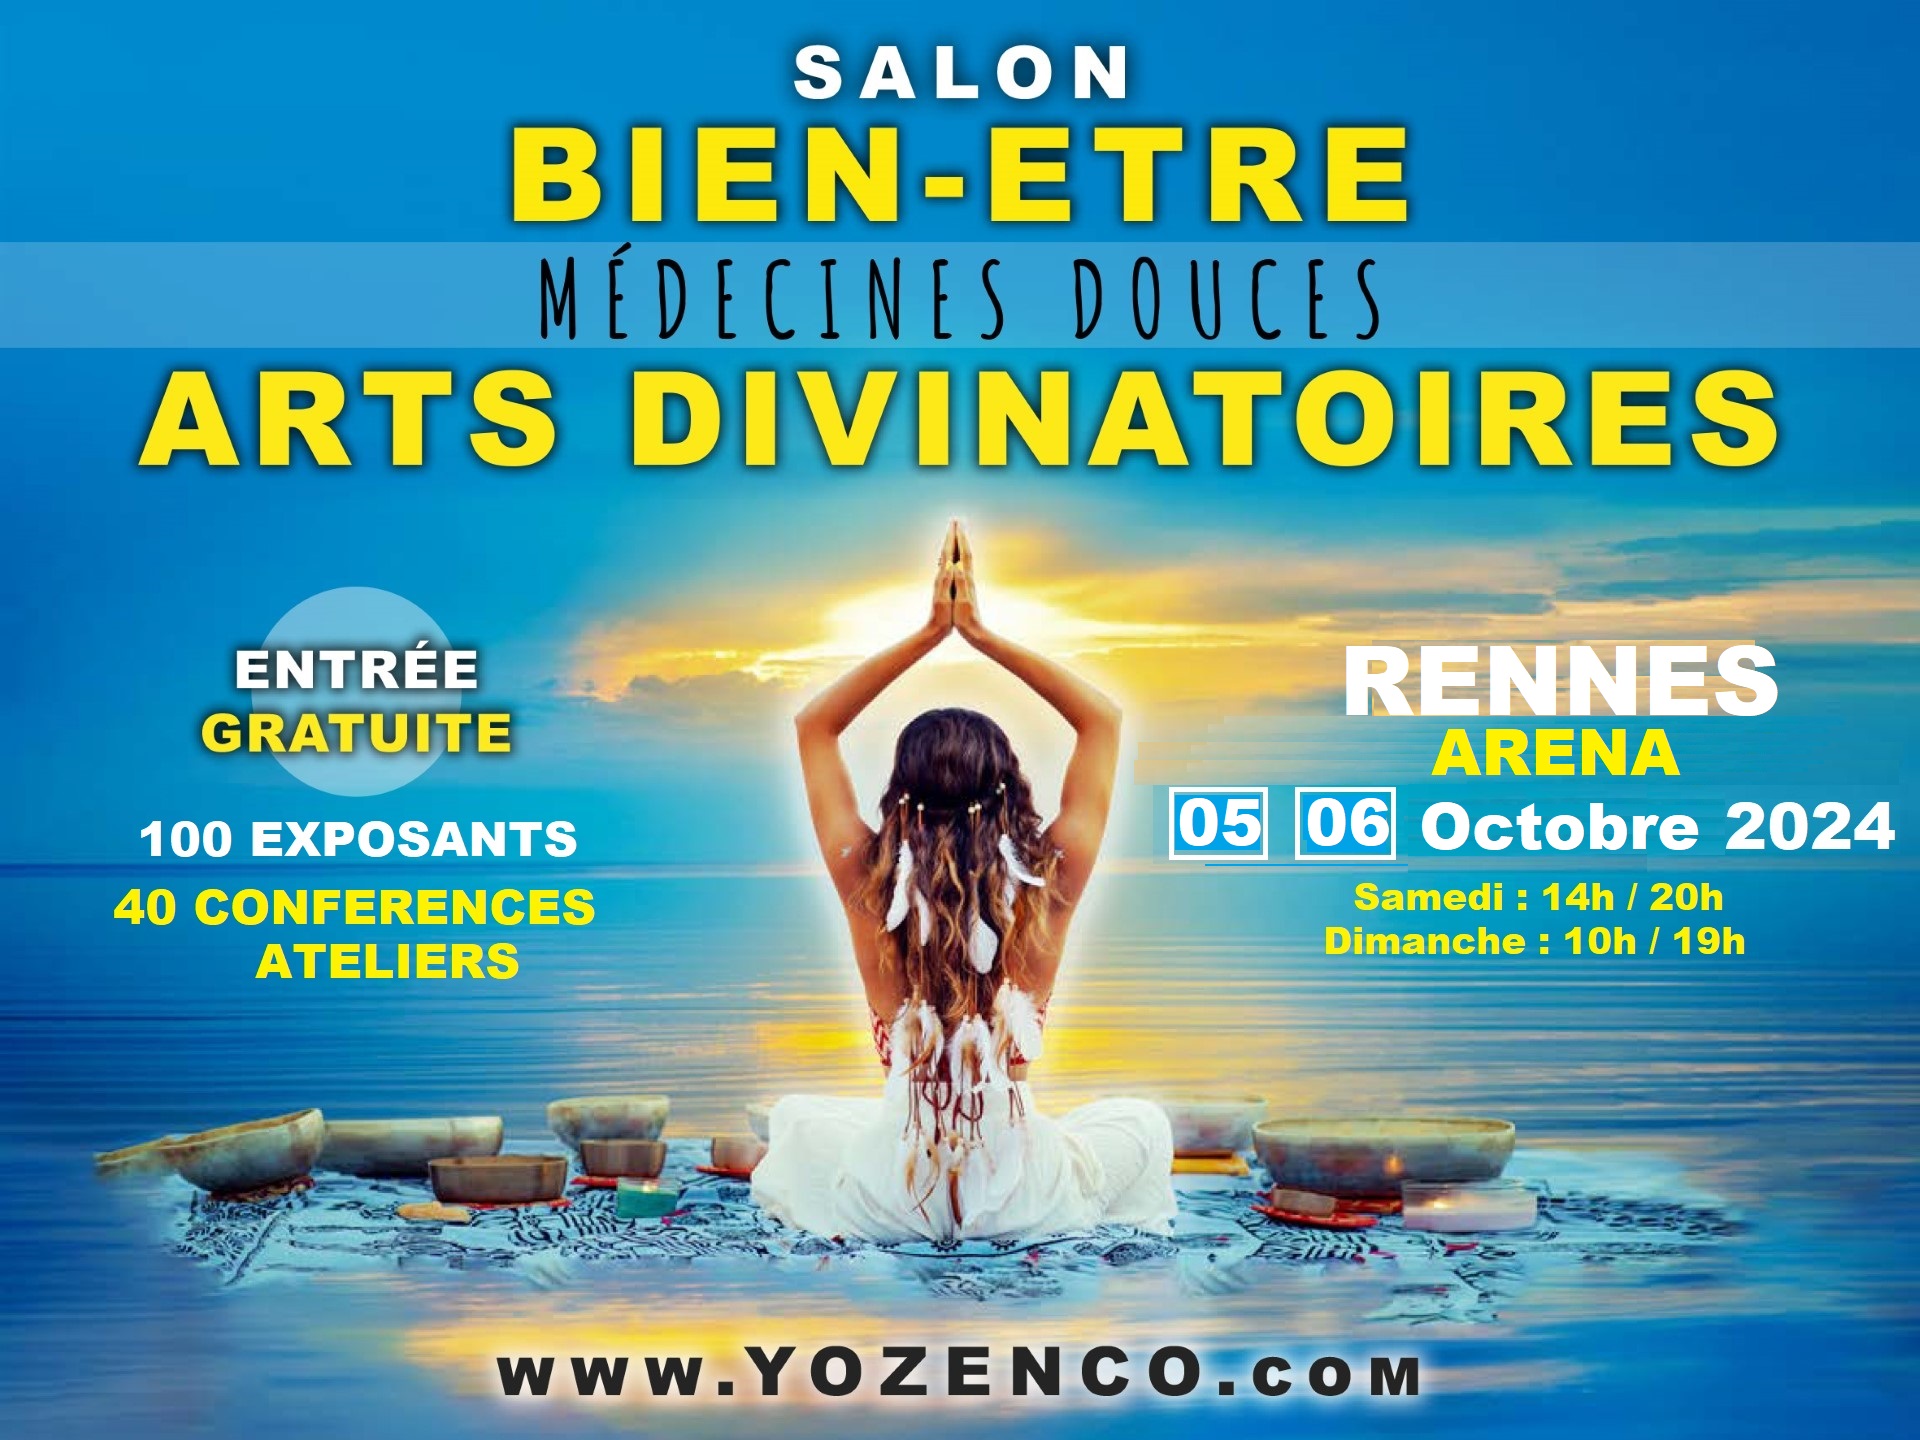 Salon bien-être, médecines douces et arts divinatoires 2024 de Rennes